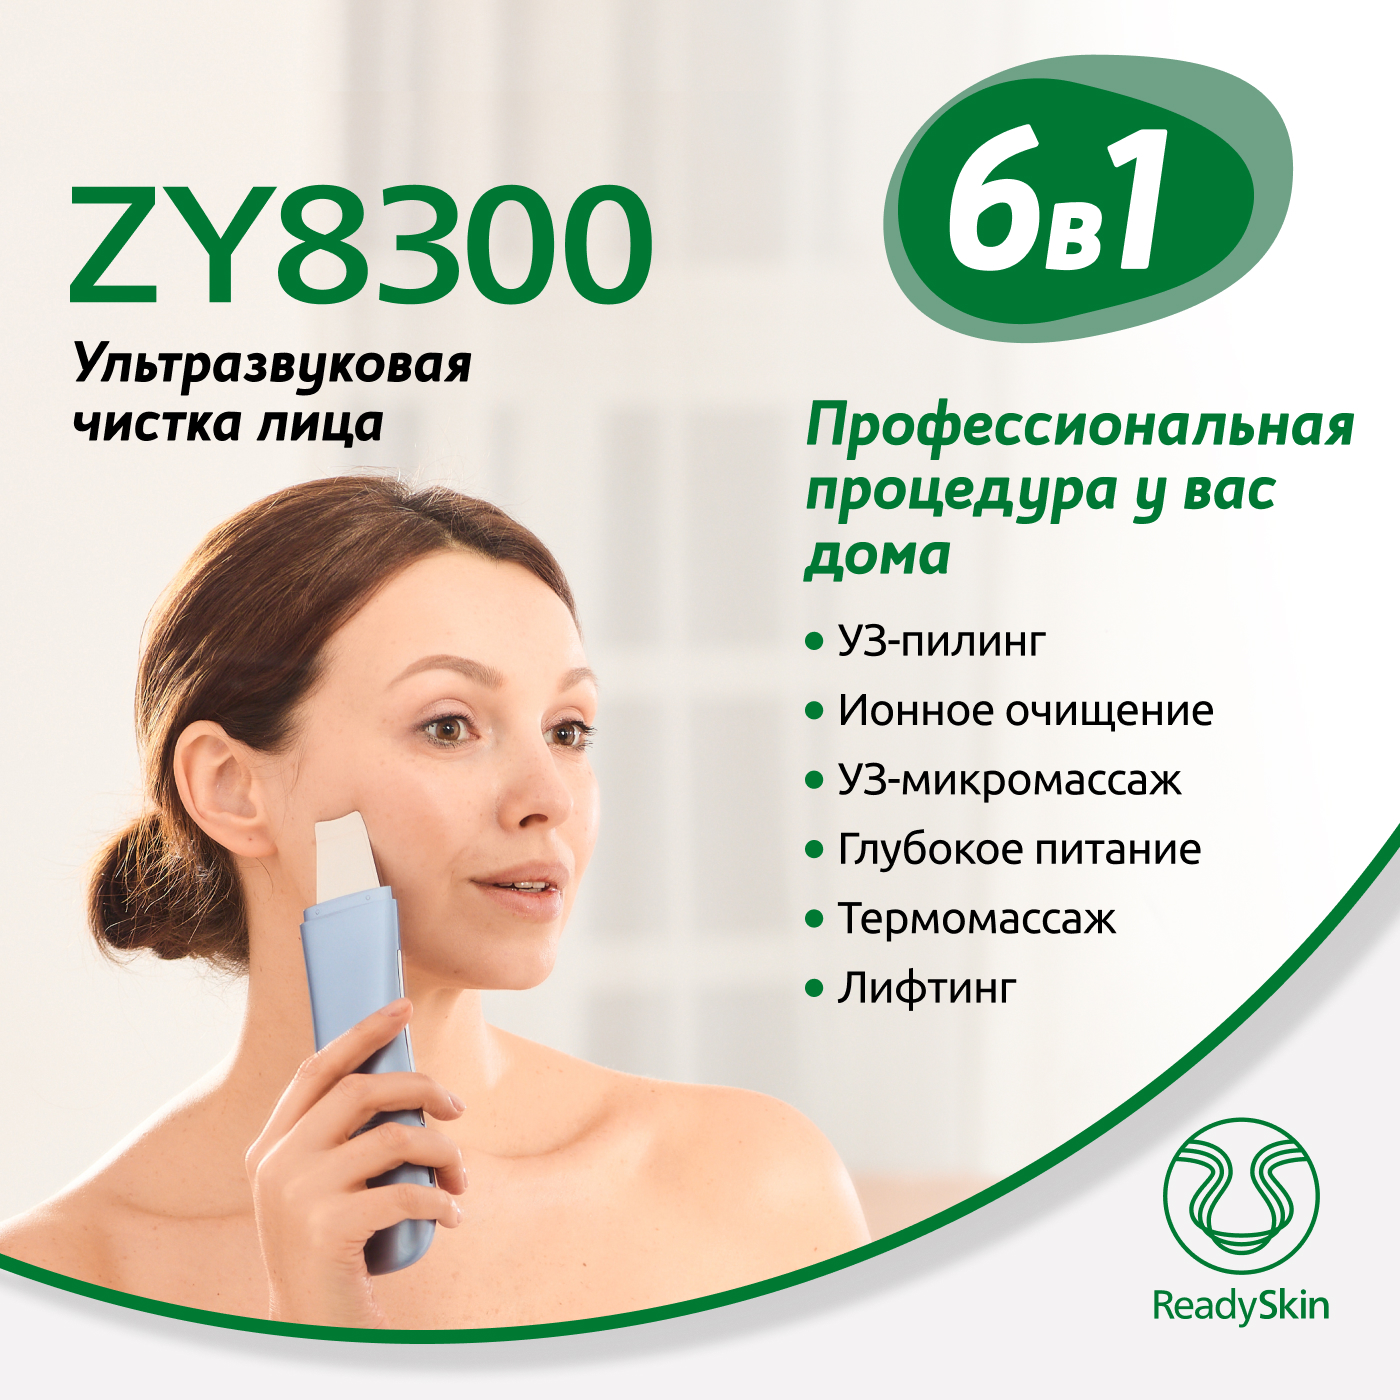 Аппарат ReadySkin ZY8300 для ультразвуковой чистки, ионофореза и термомассажа лица